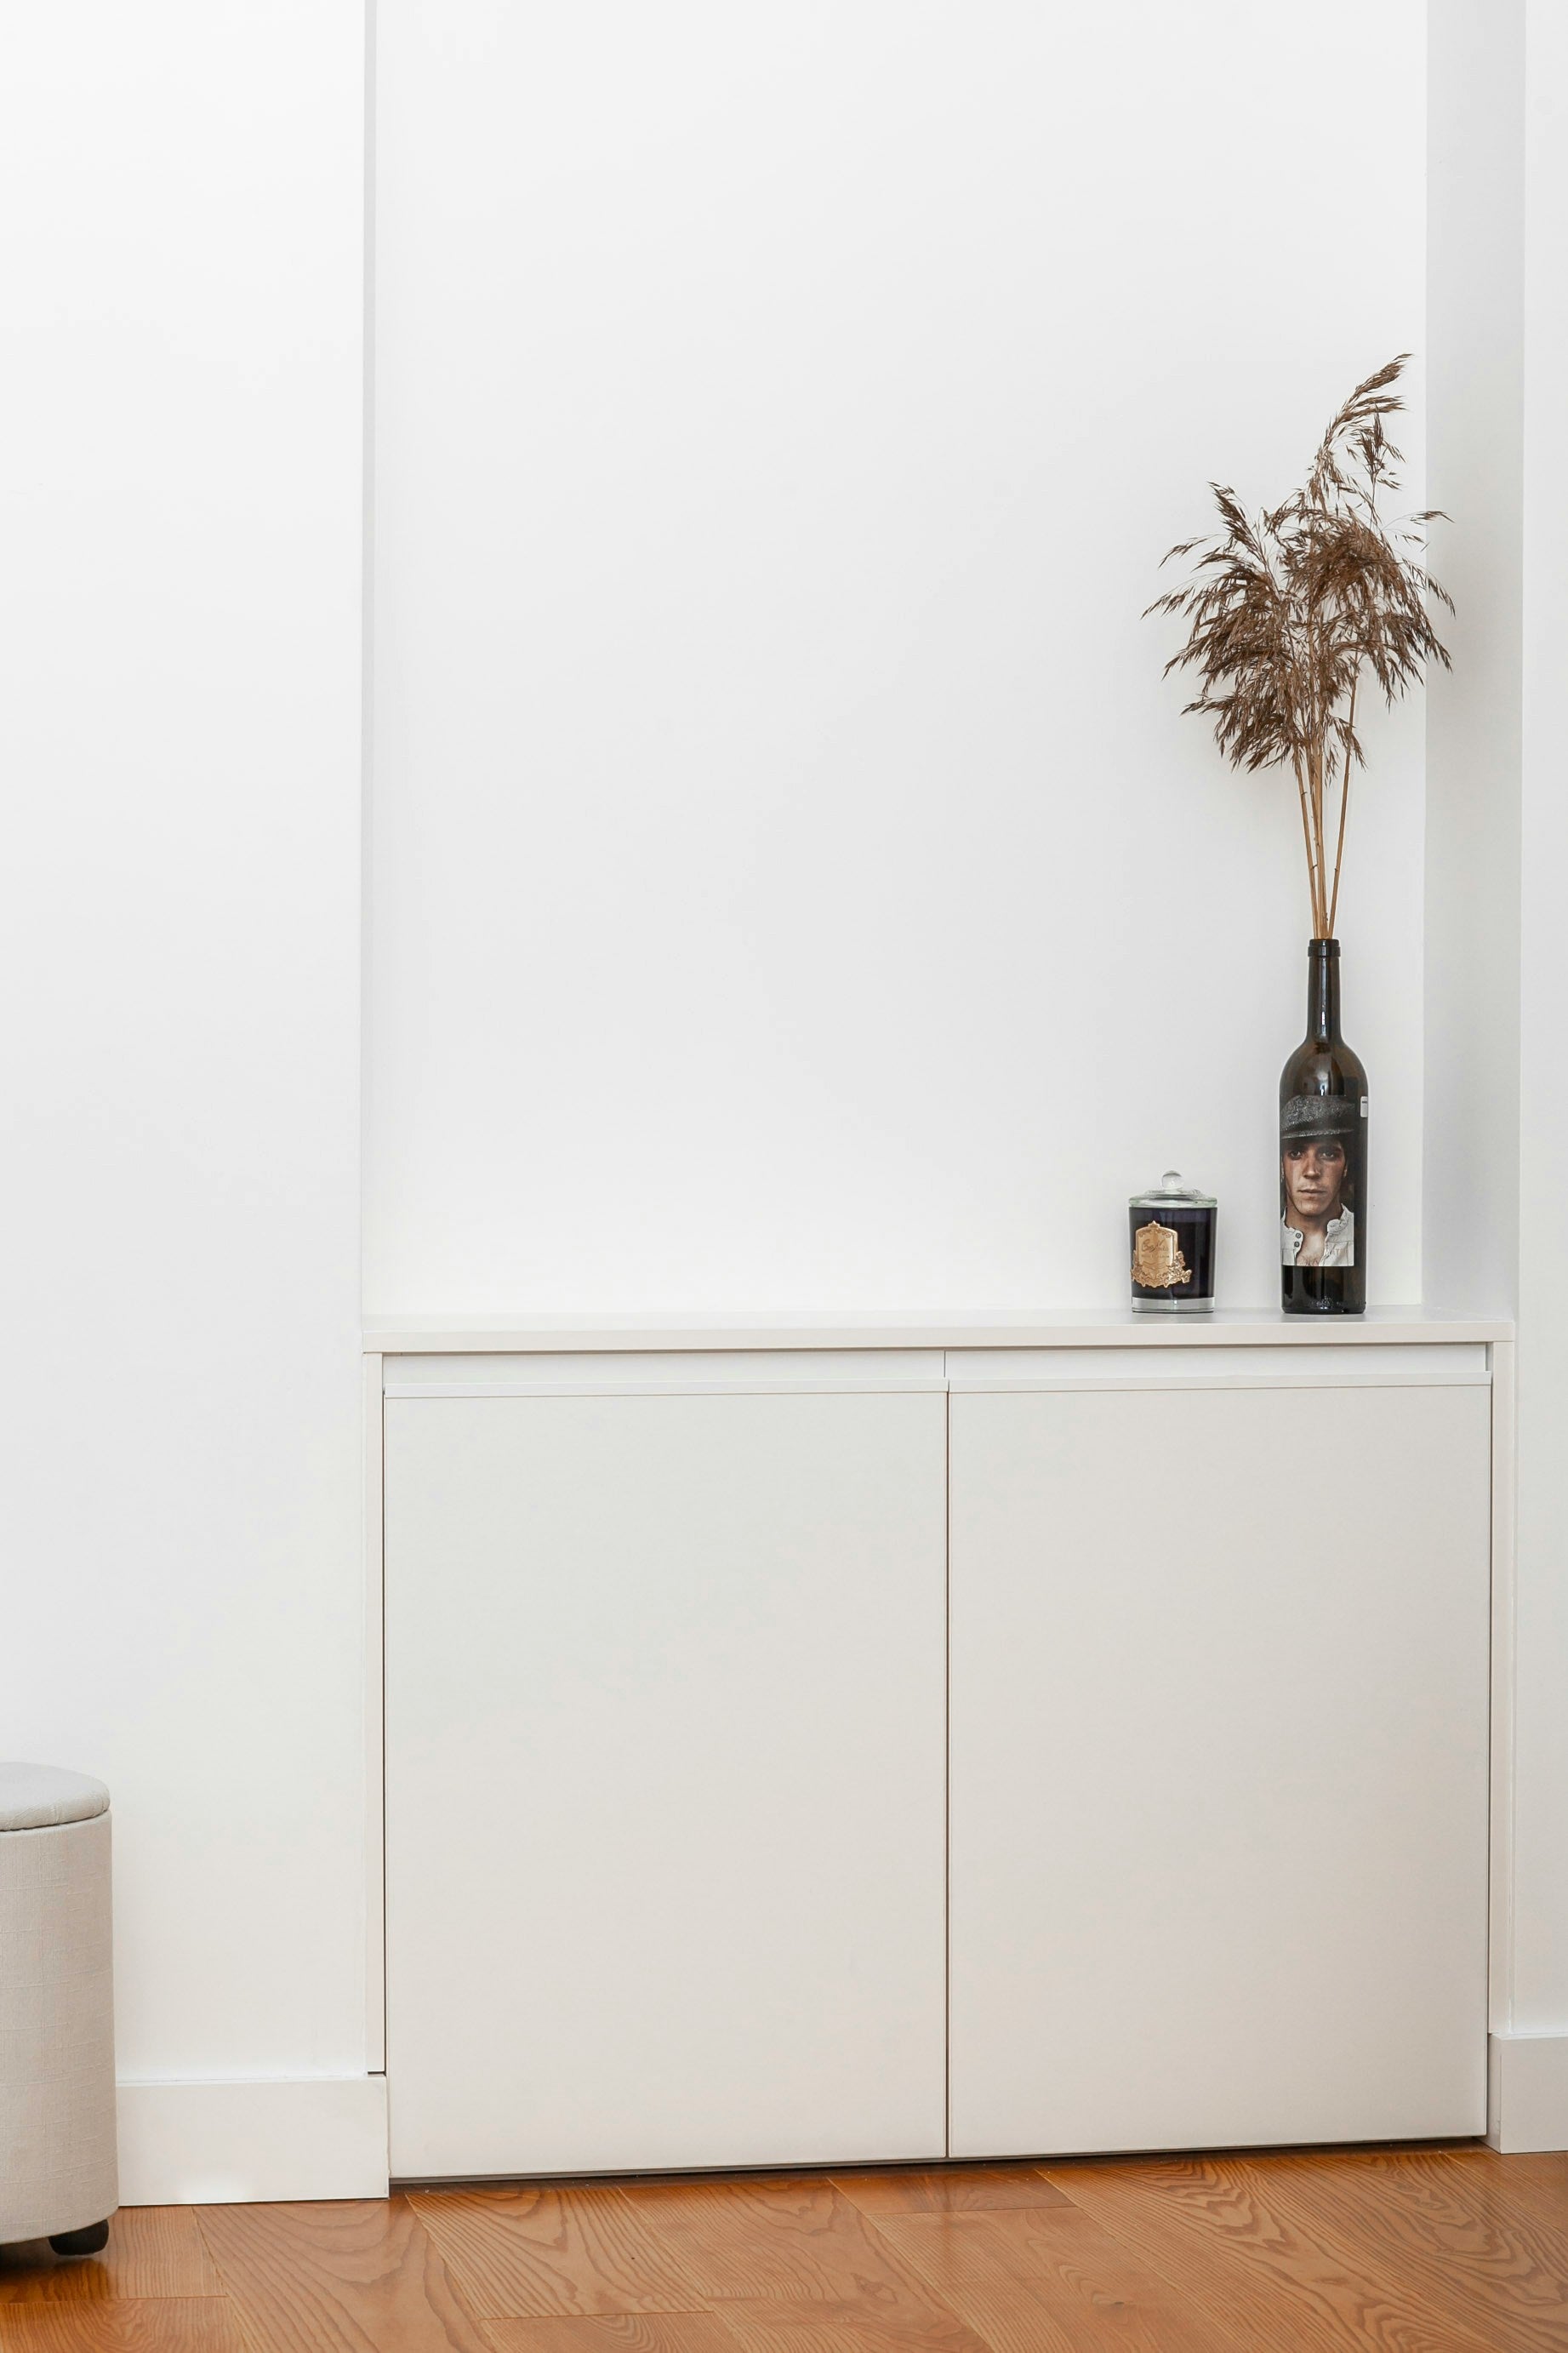 Möbelfolie in Weiß: Die einfache Lösung für einen modernen und frischen Look in Ihrem Zuhause